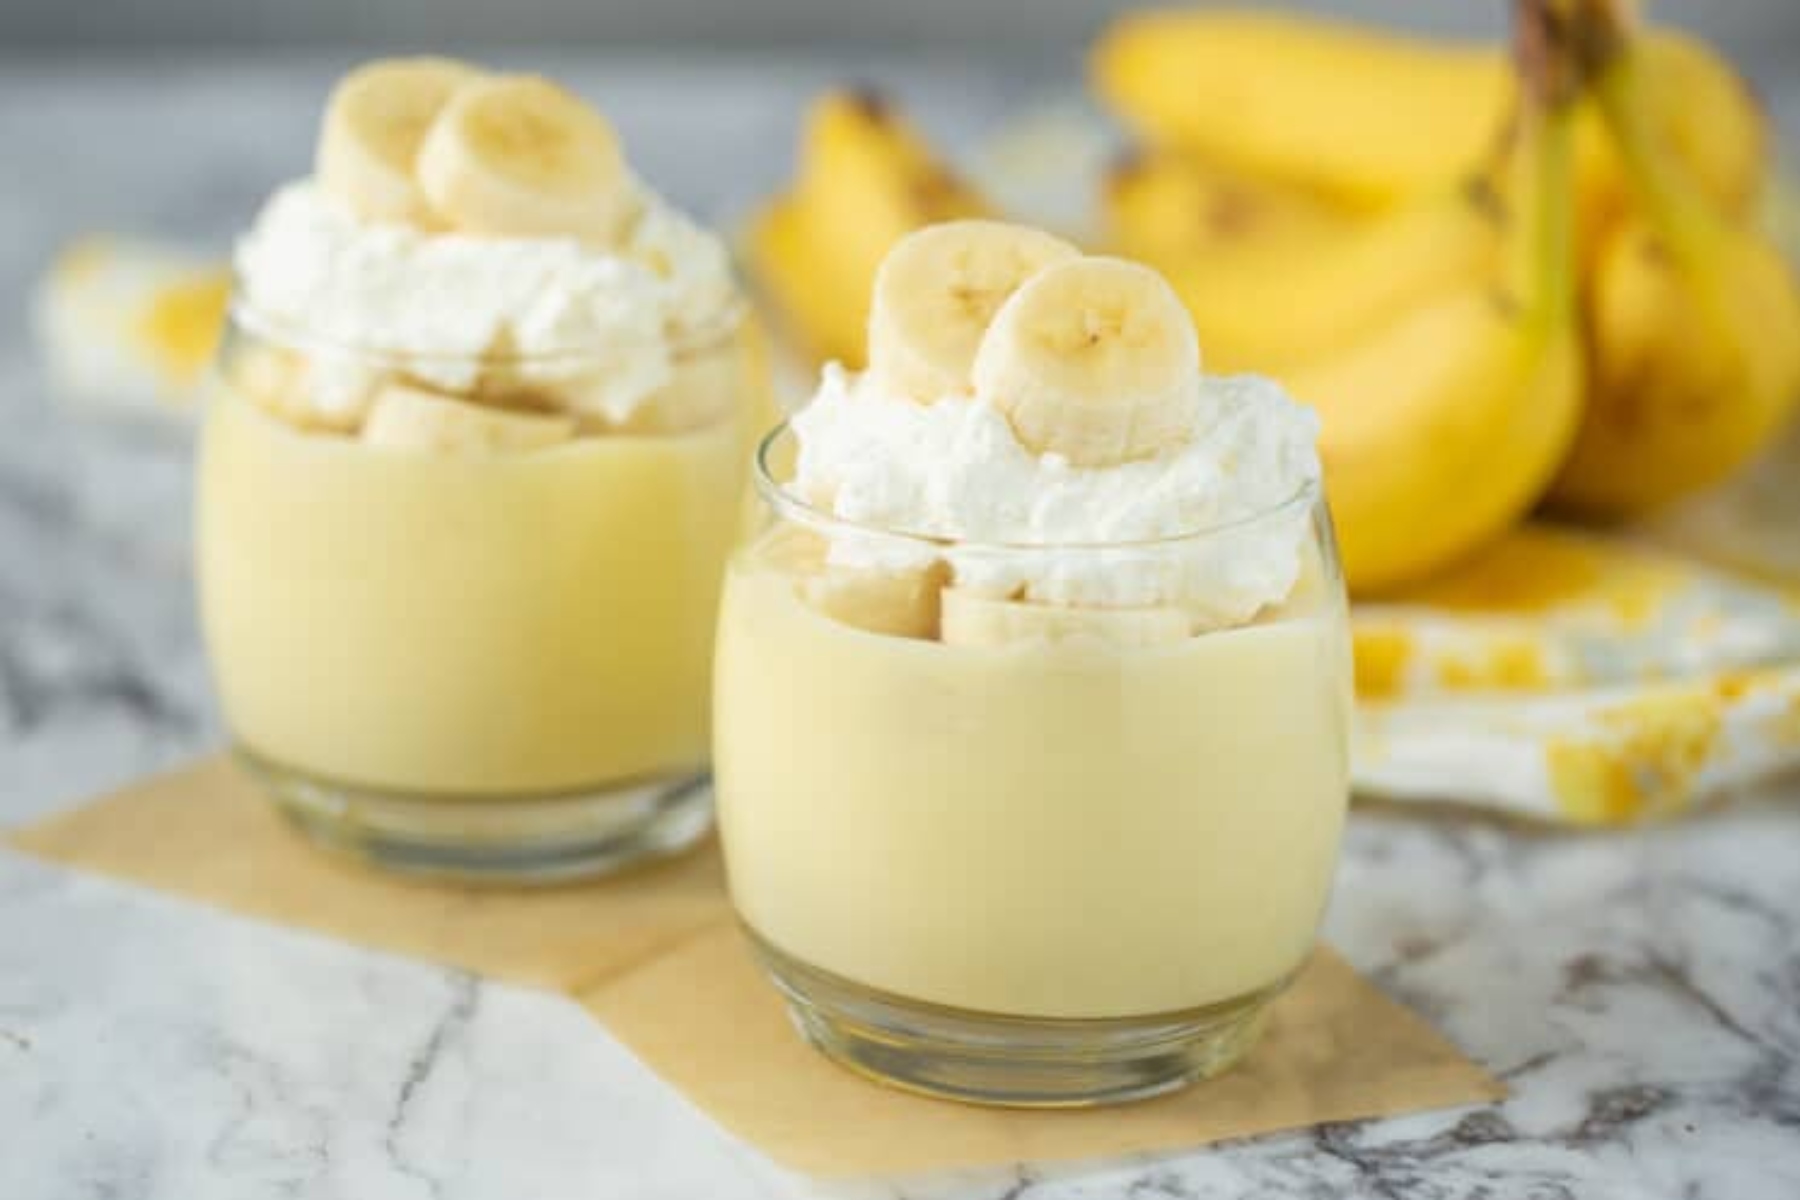 Πουτίγκα μπανάνας: Η απόλαυση πολλαπλασιάζεται σε στρώσεις με αυτό το γλυκό